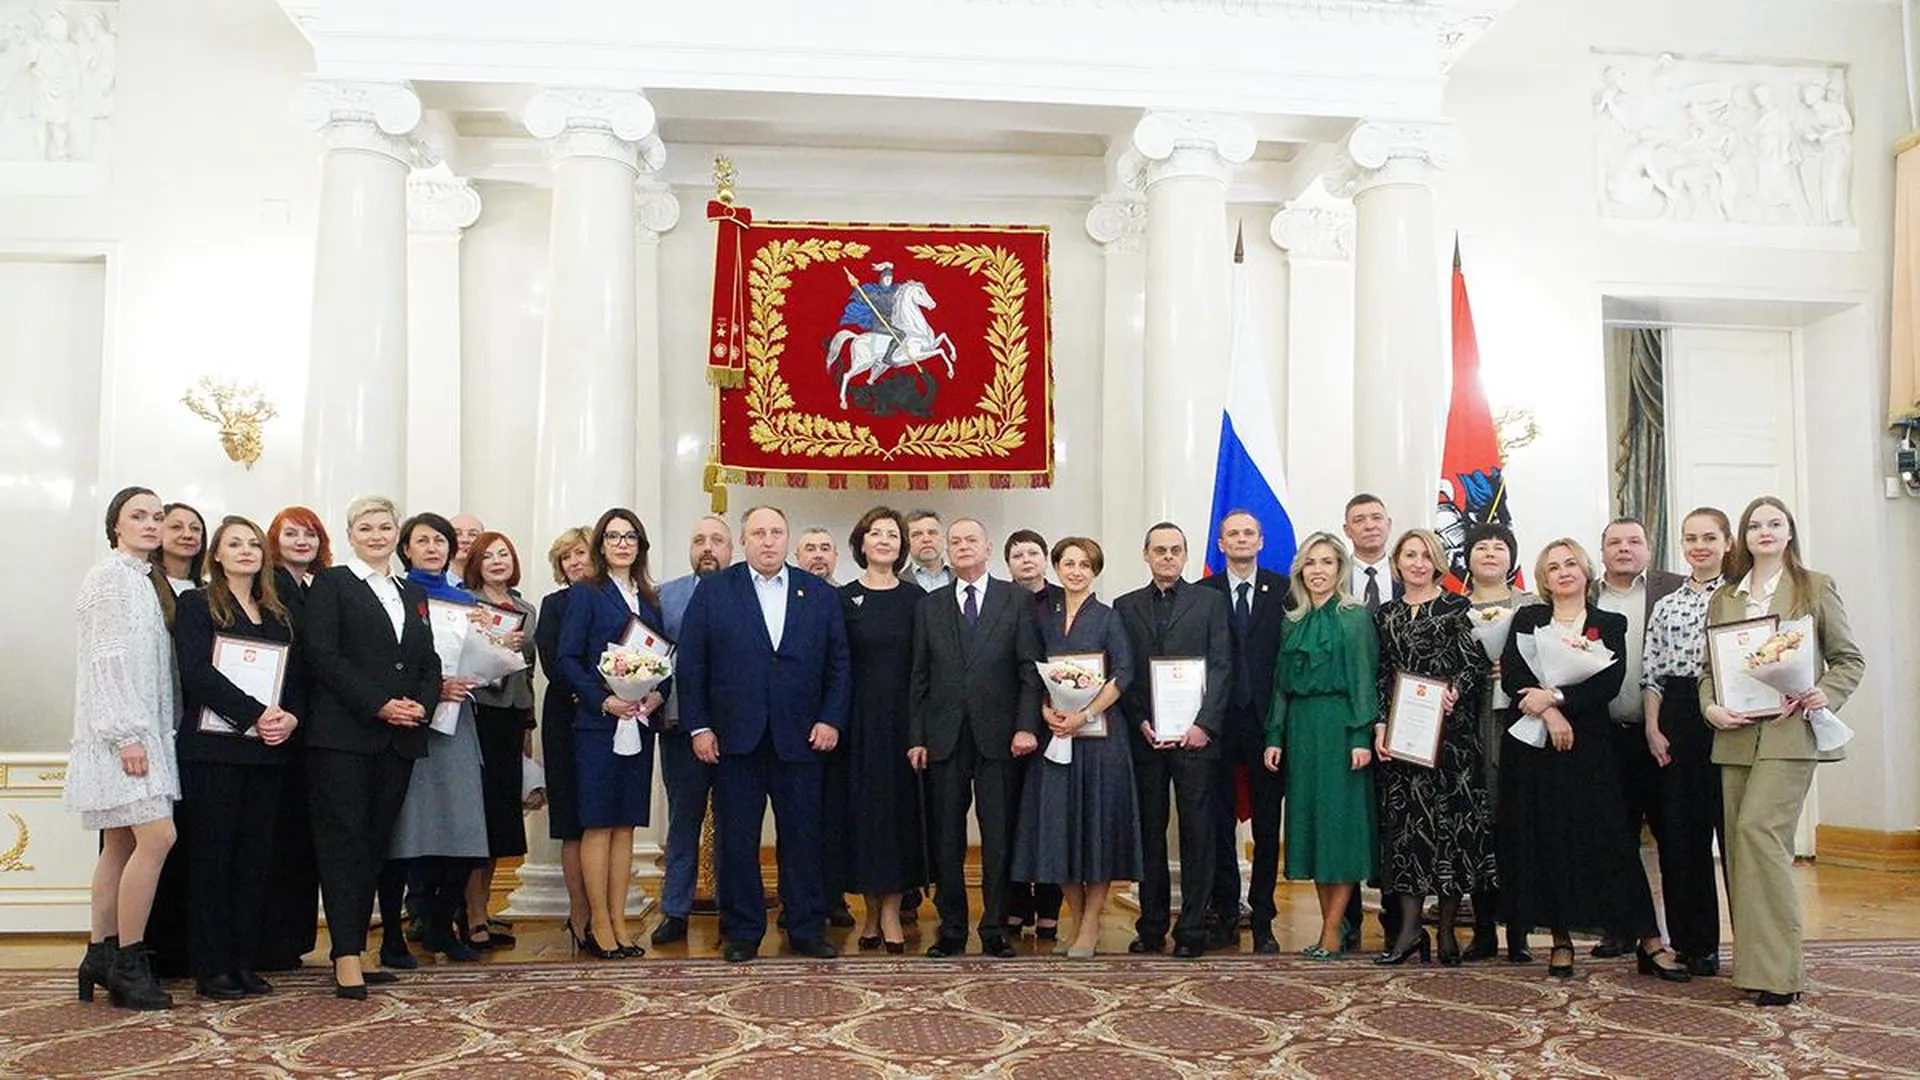 Сотрудники «Вечерней Москвы» получили награды президента Владимира Путина